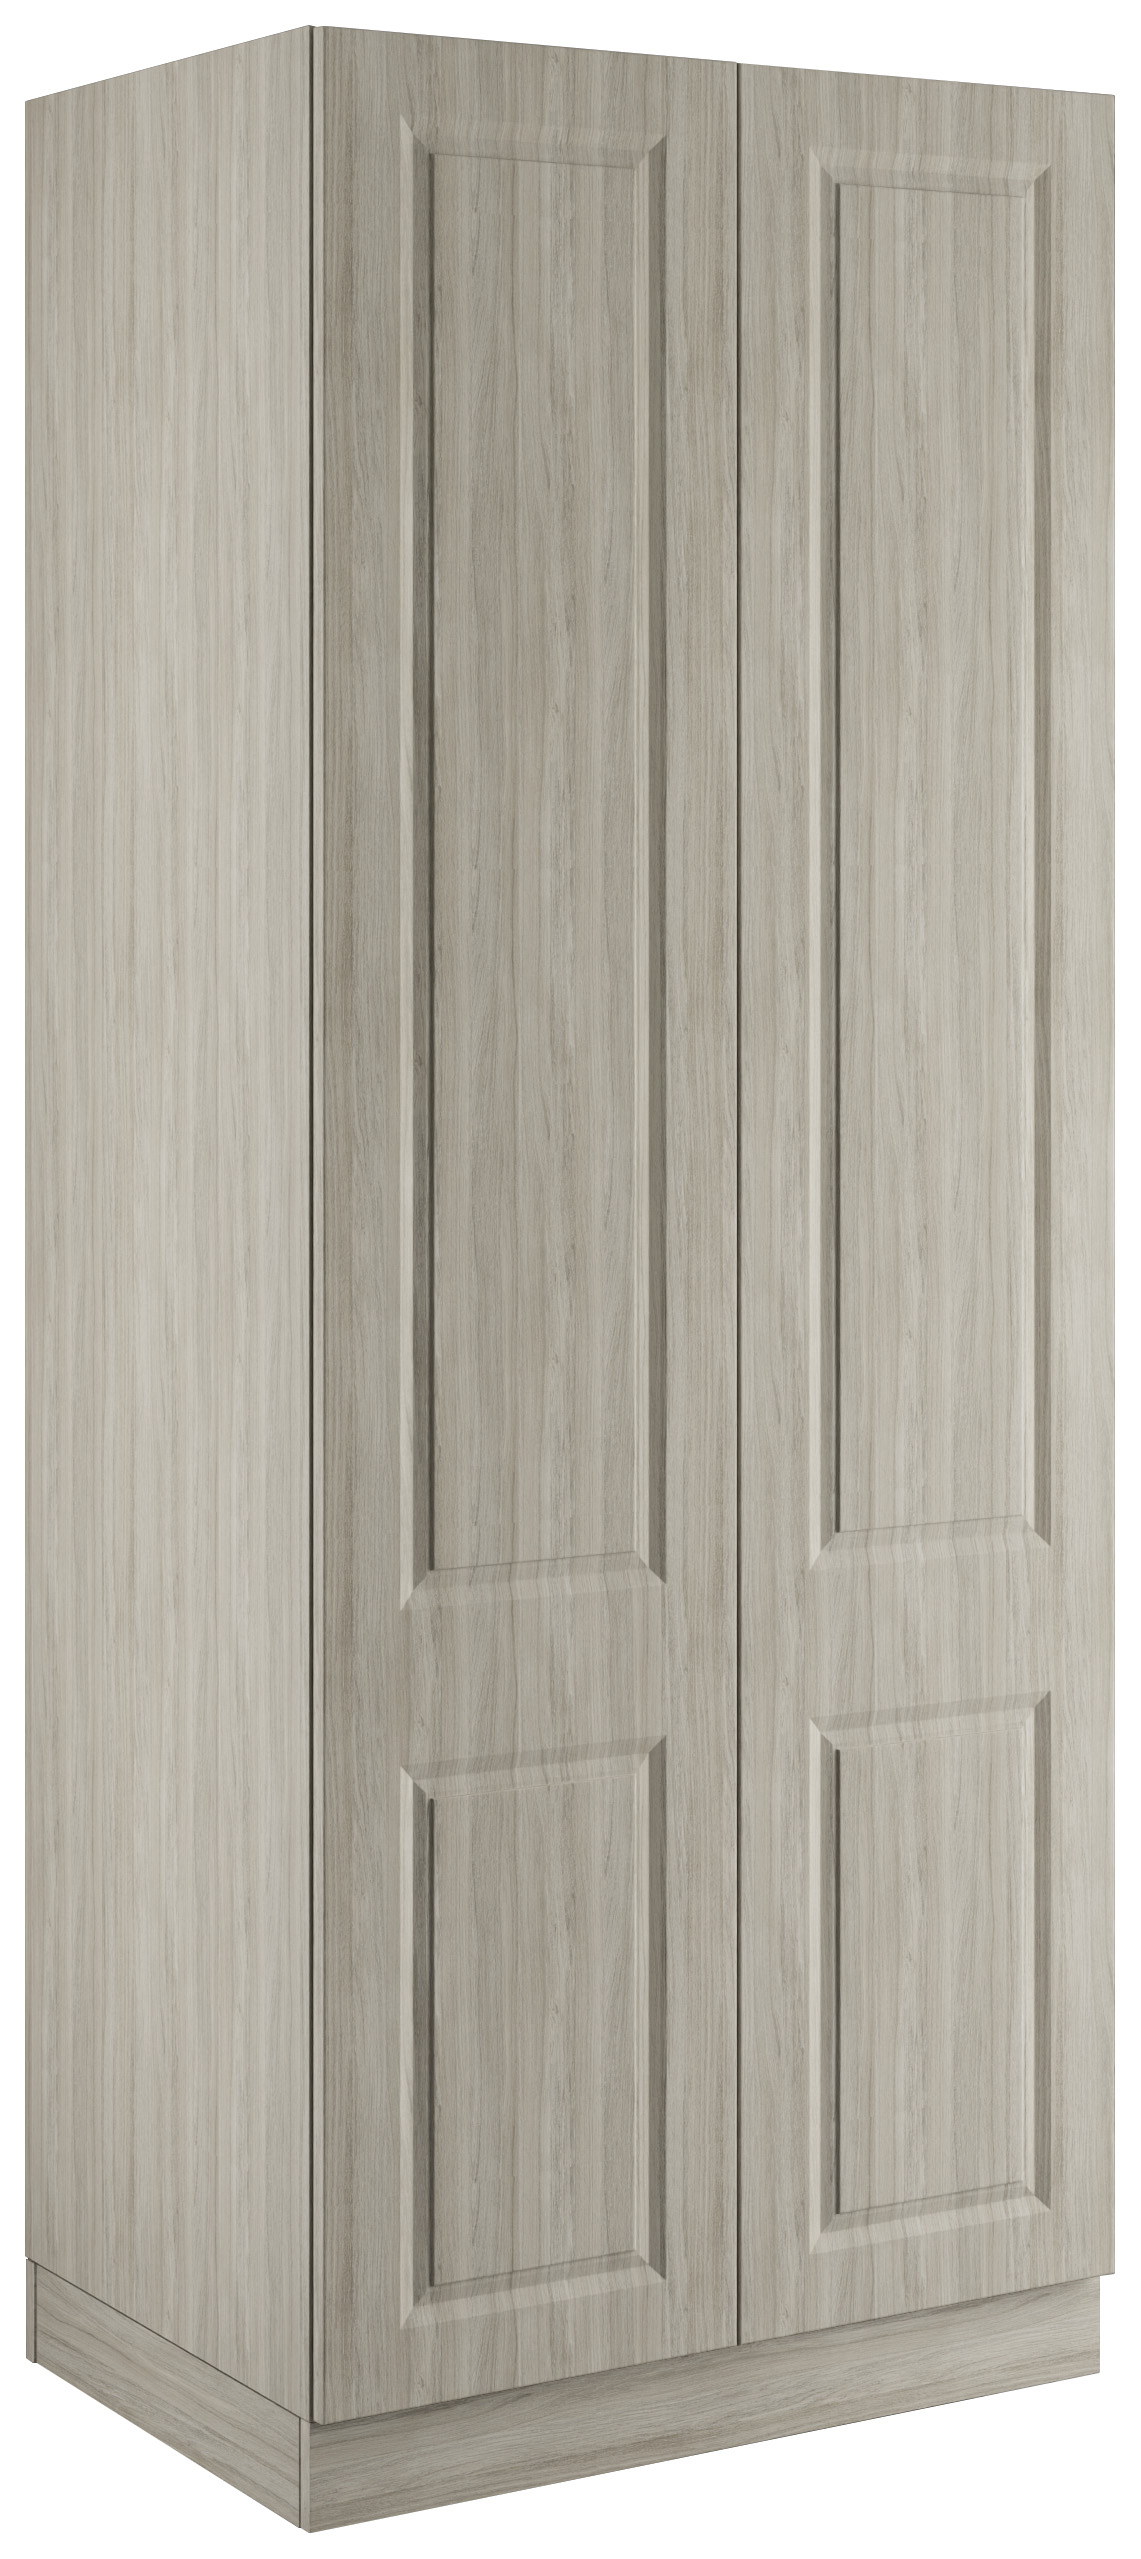 Harrogate Urban Oak Double Wardrobe with Single Rail & Shelves - 900 x 2260 x 608mm